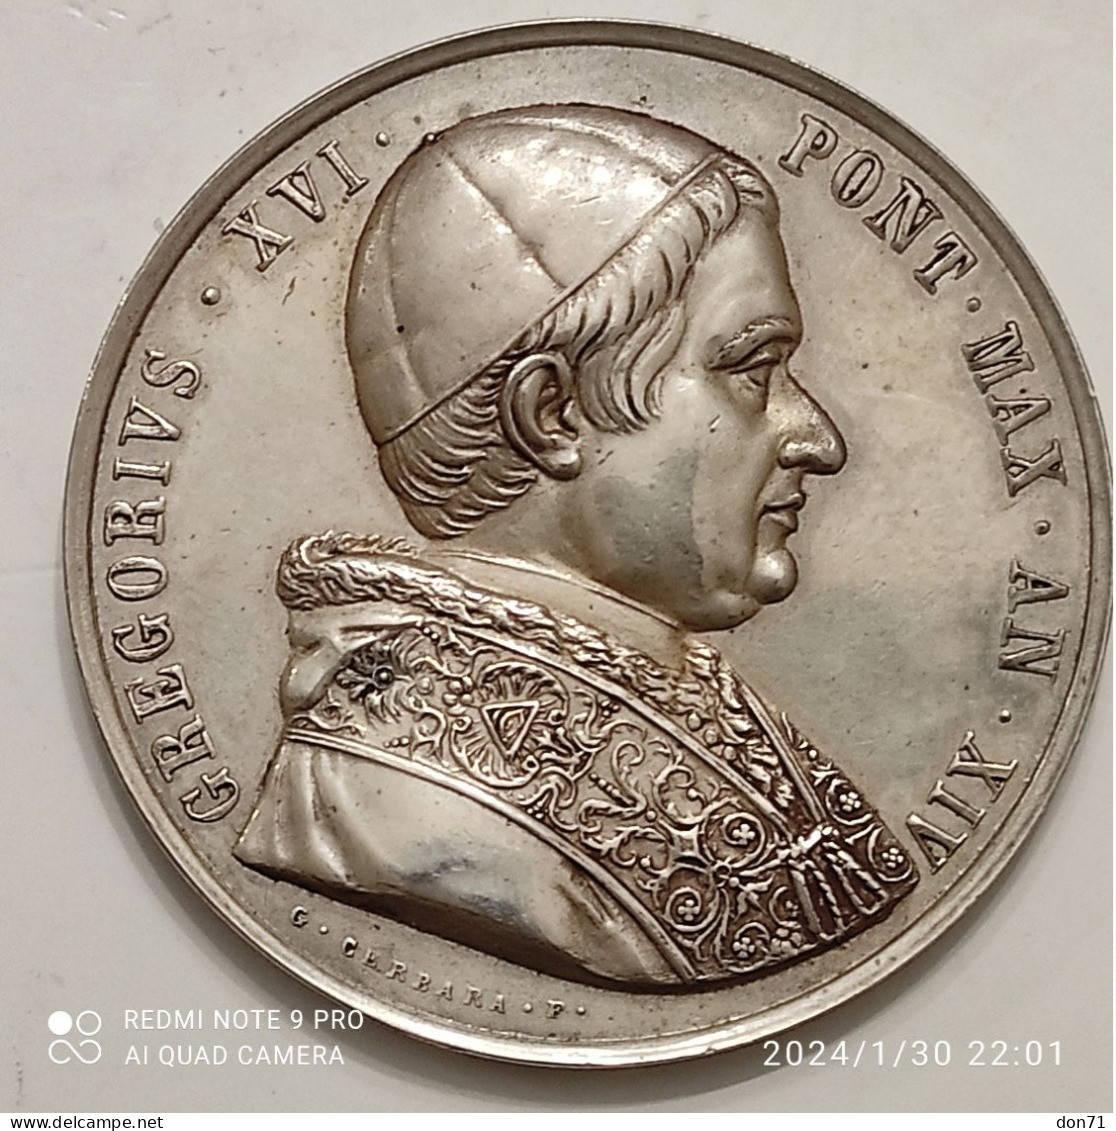 Stato Pontificio - Medaglia AG Gregorio XVI - Monarchia/ Nobiltà